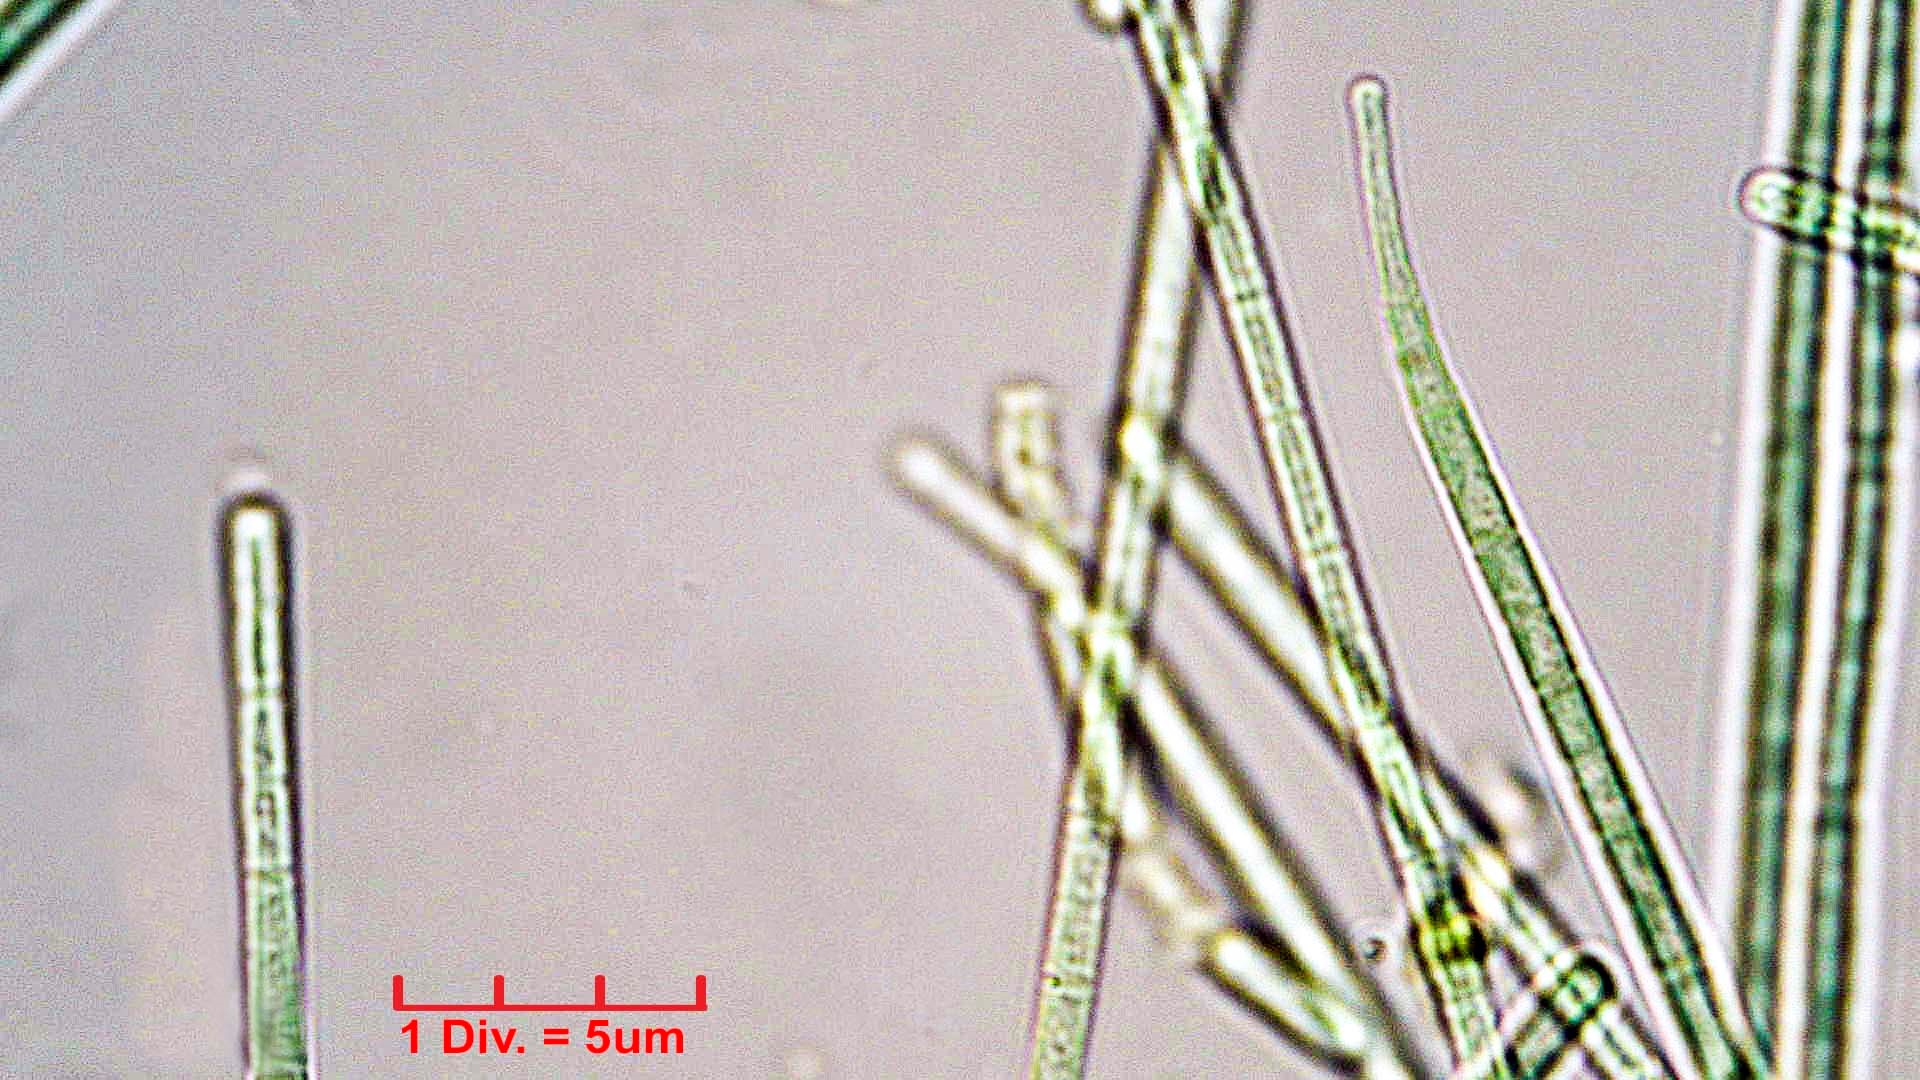 ./Cyanobacteria/Oscillatoriales/Coleofasciculaceae/Geitlerinema/splendidum/292.jpg